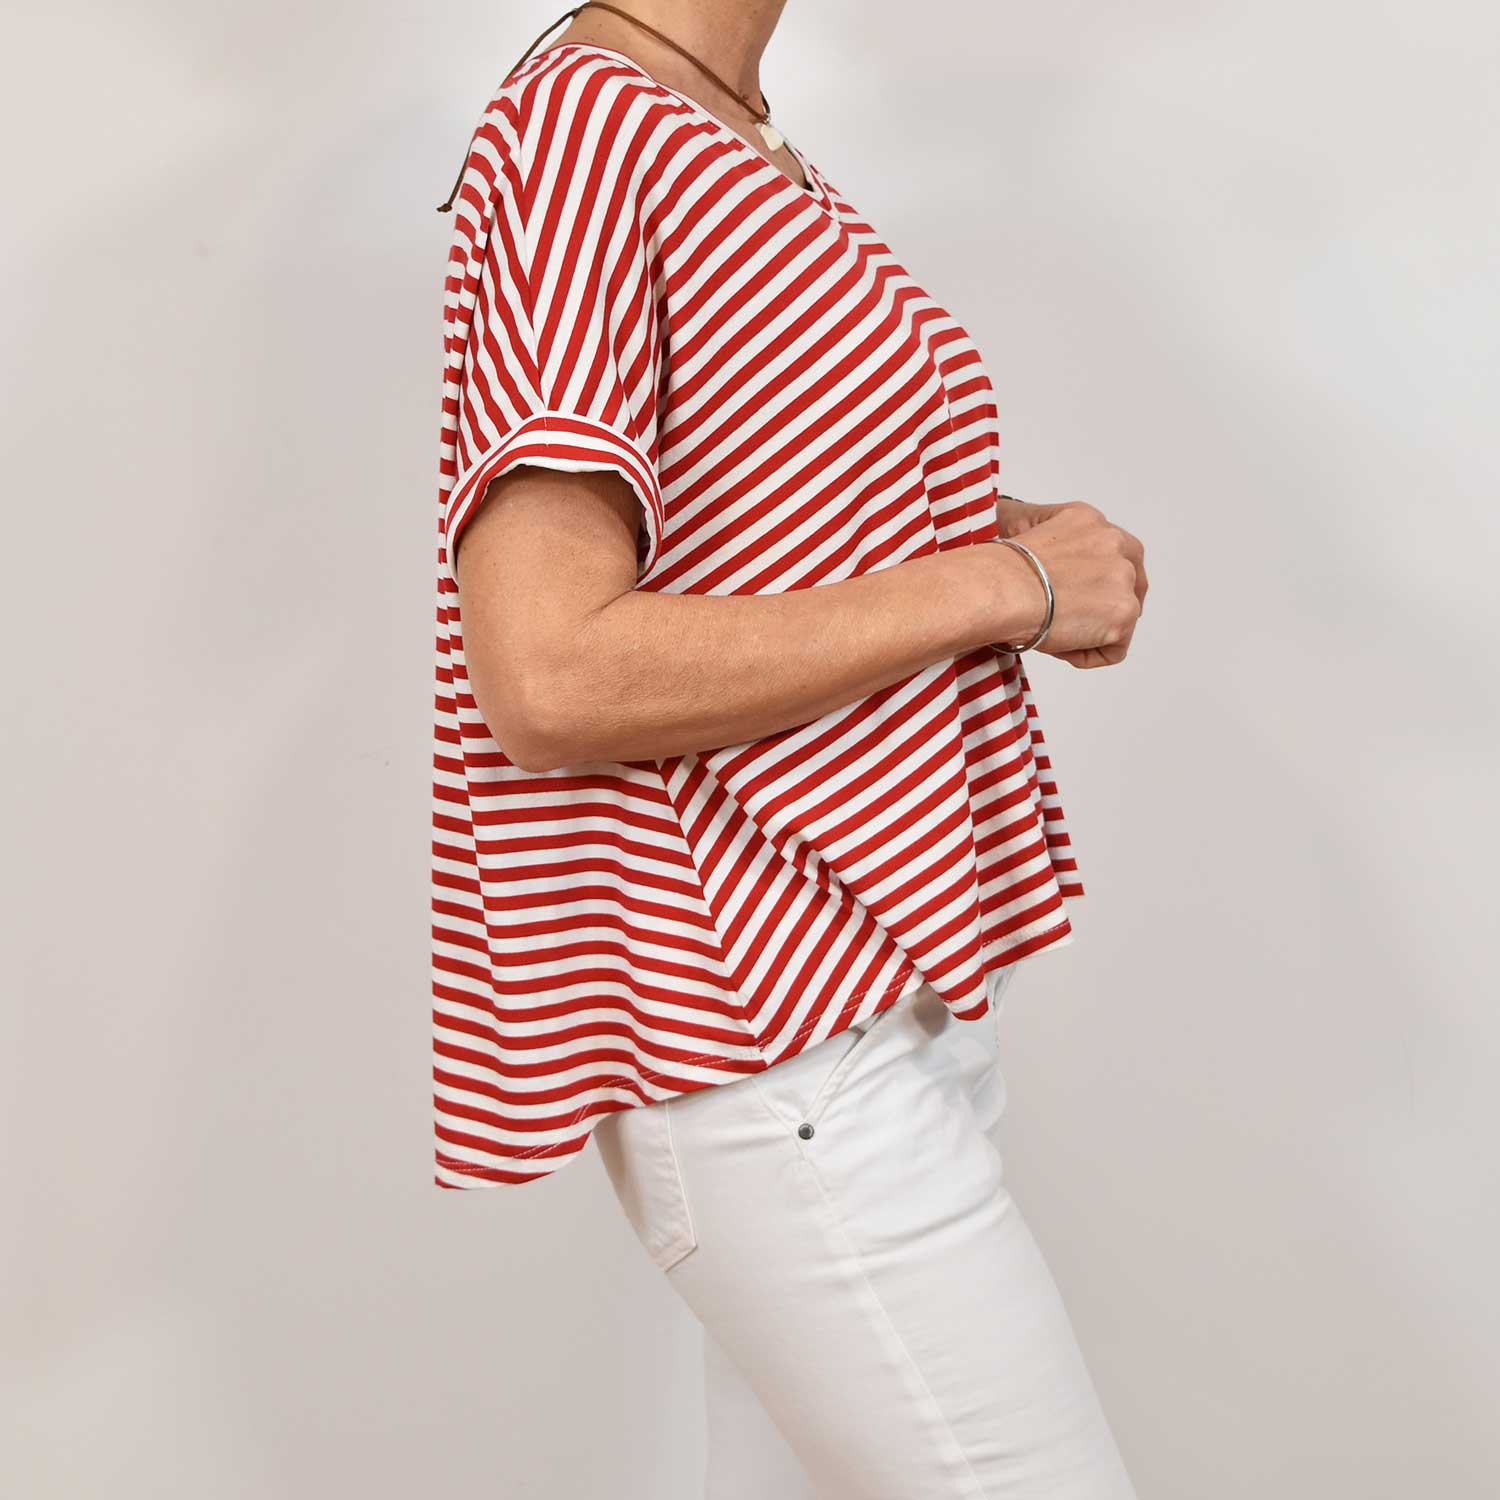 Camiseta pico rayas oversize roja